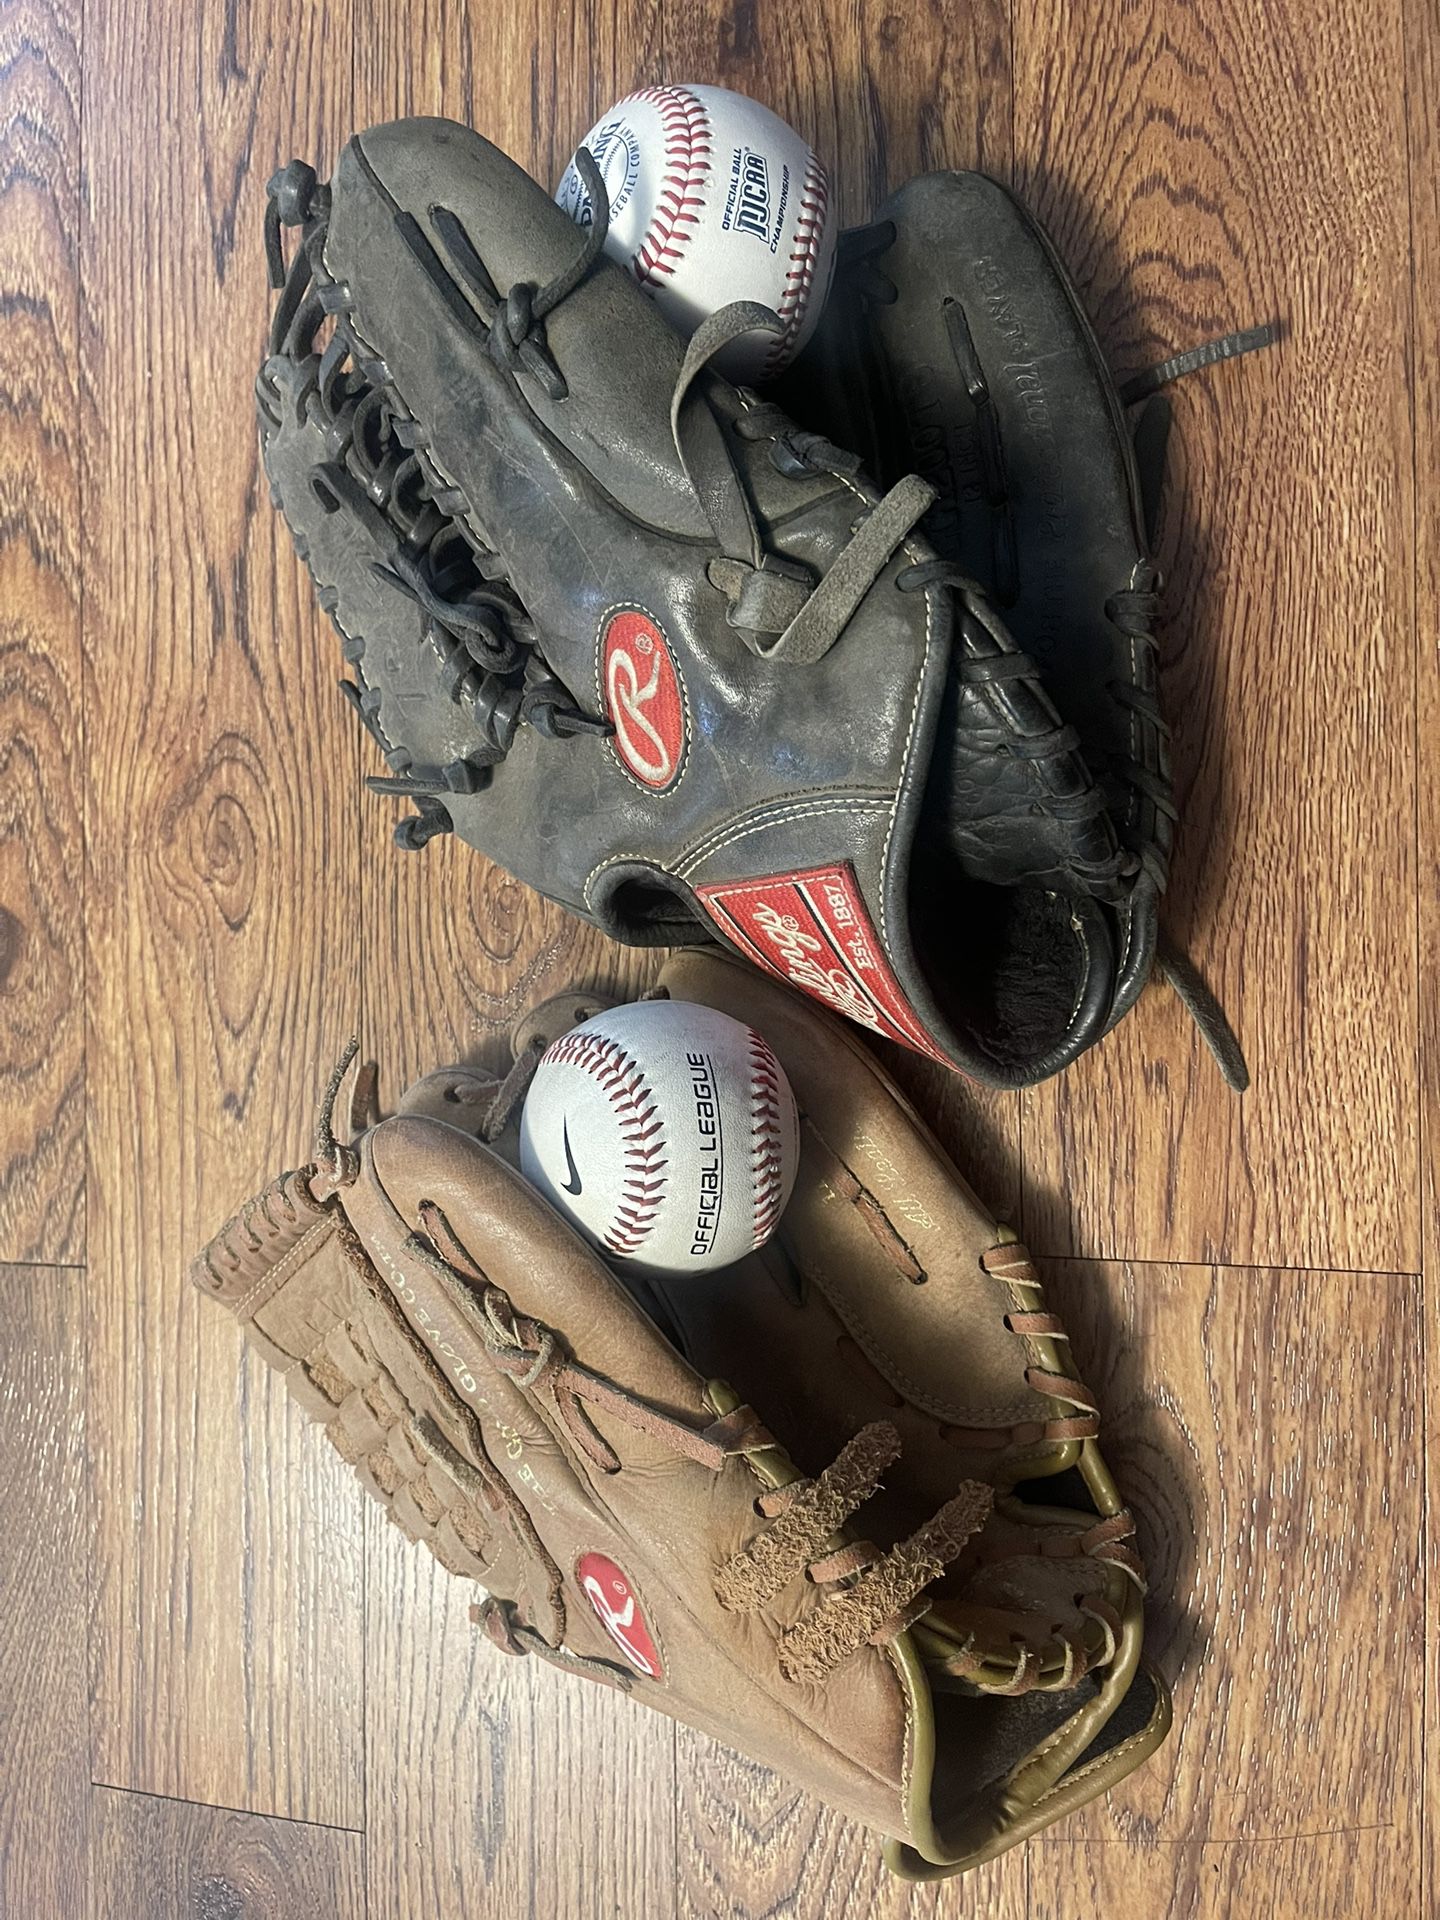 Rawlings Baseball Gloves And Balls